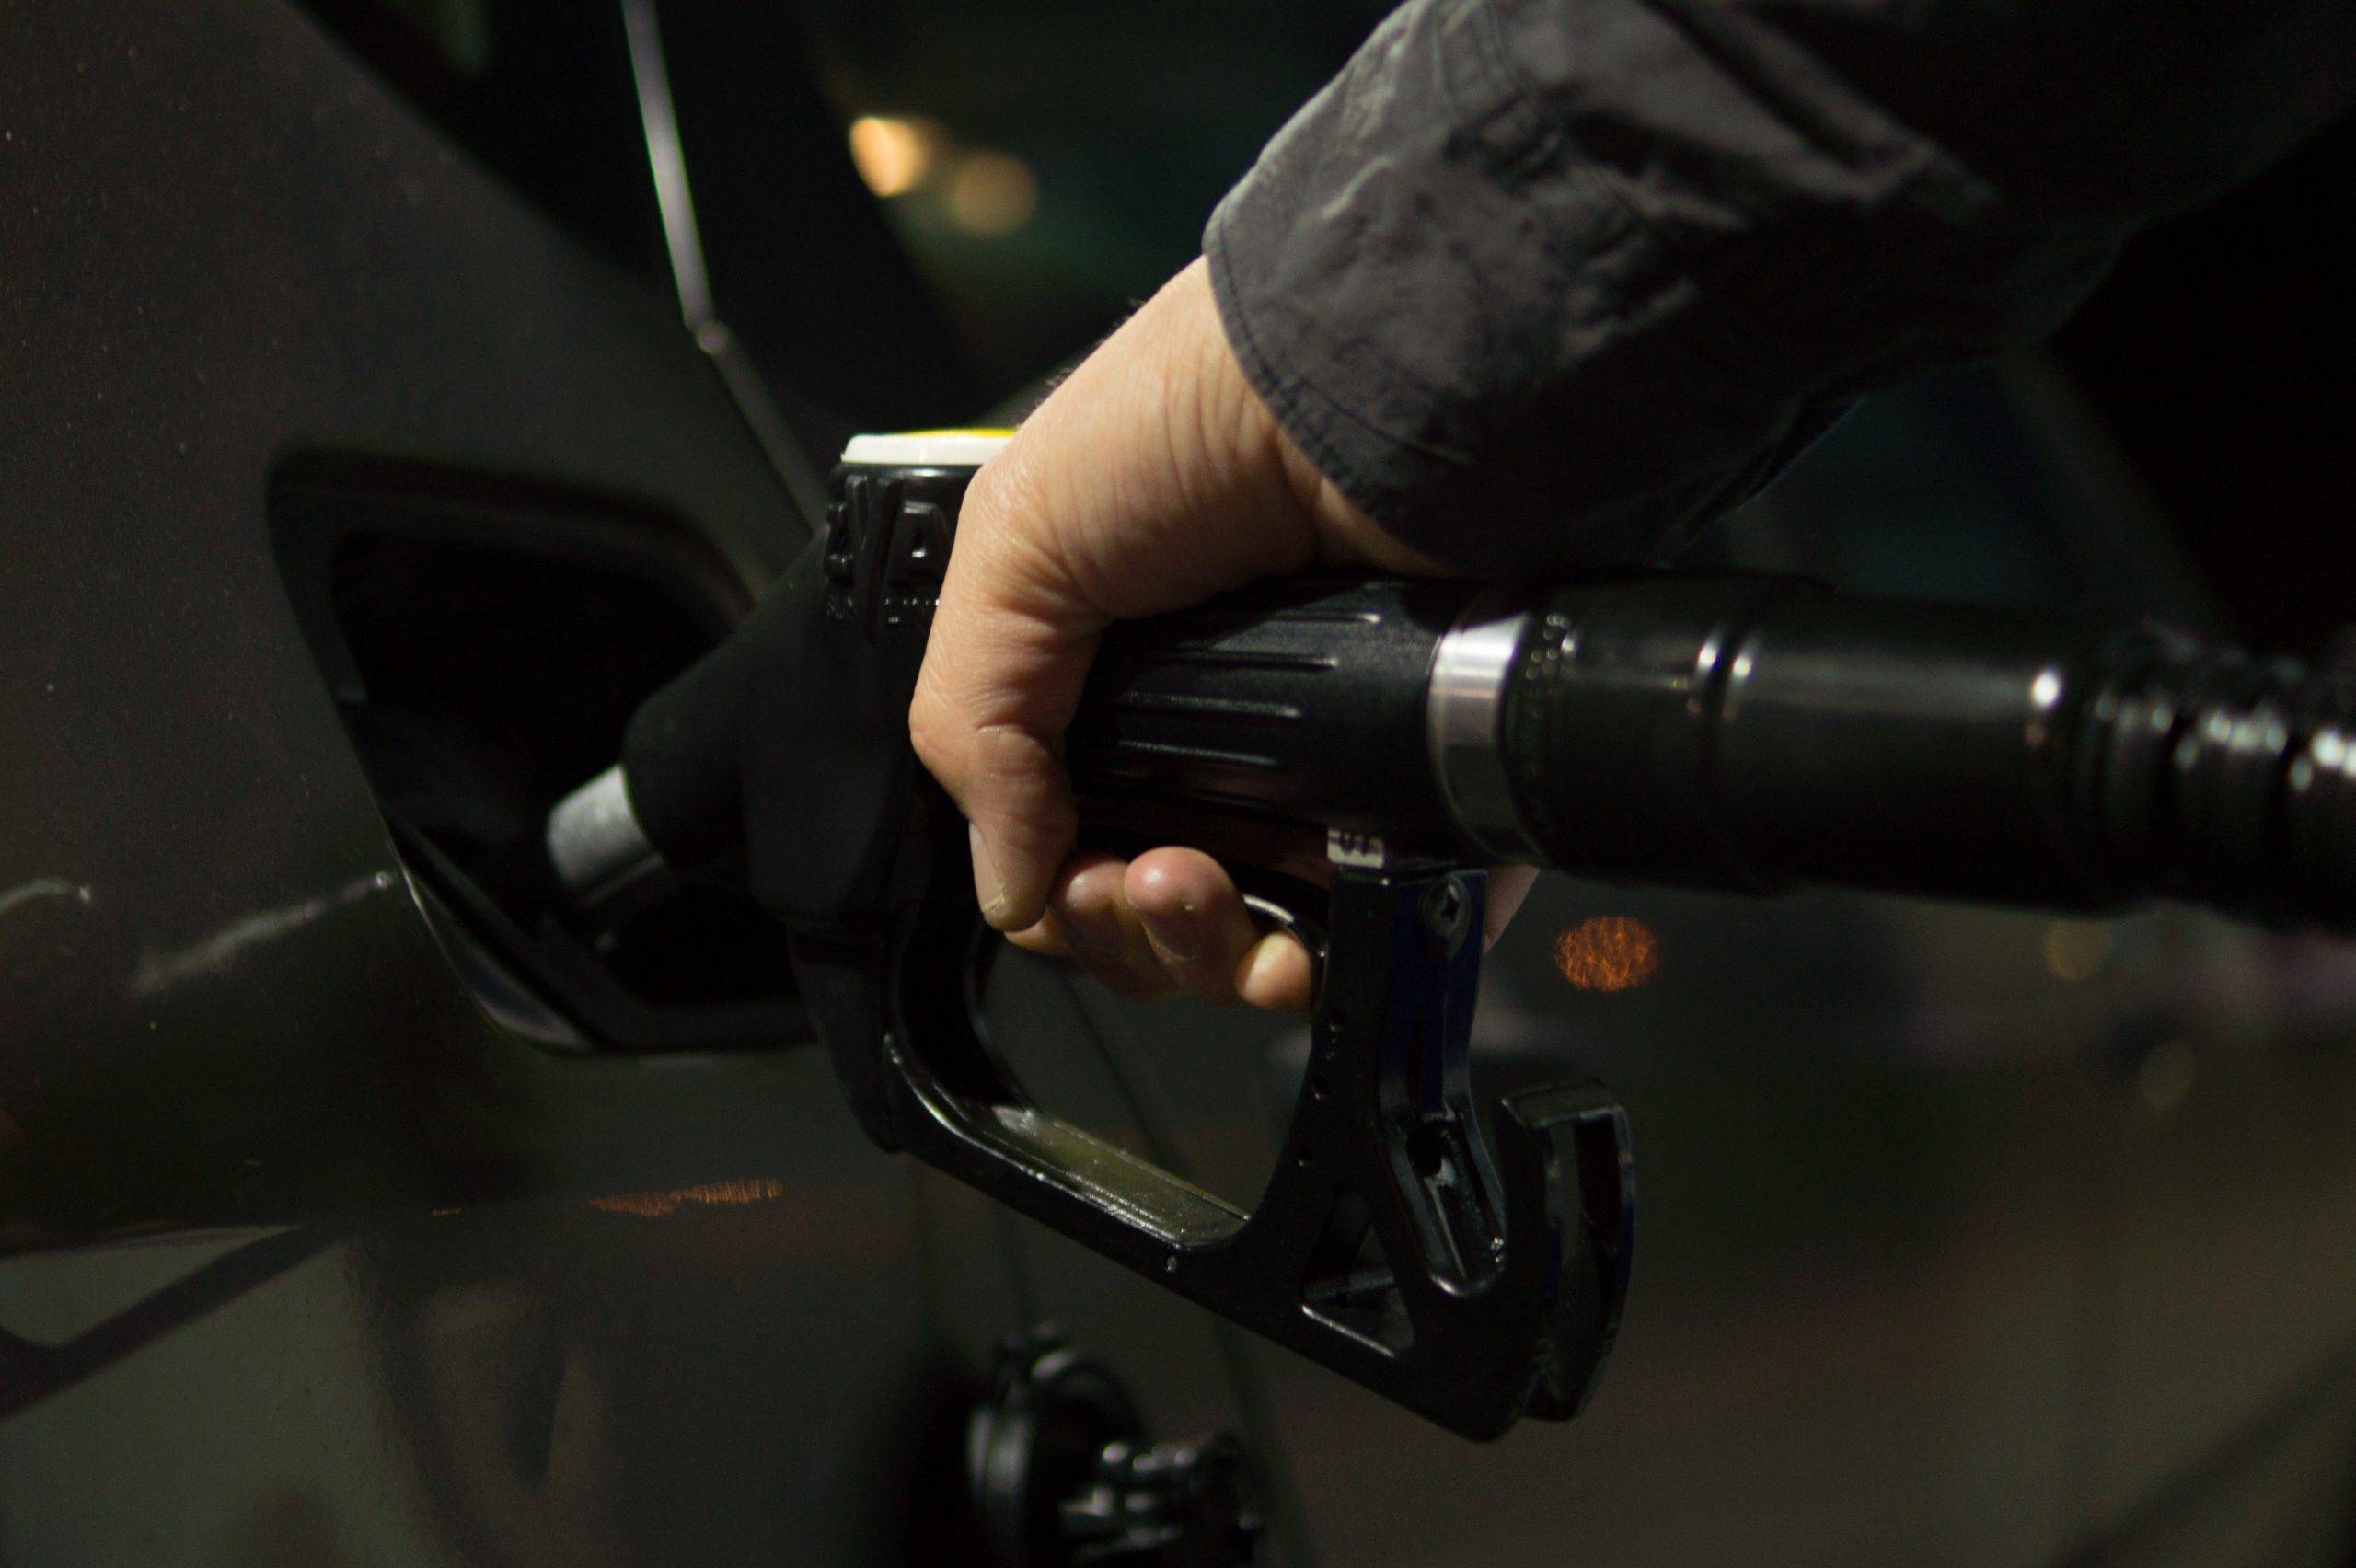 Guvernul va compensa la pompă prețul la motorină și benzină. Ce prevede noua măsură